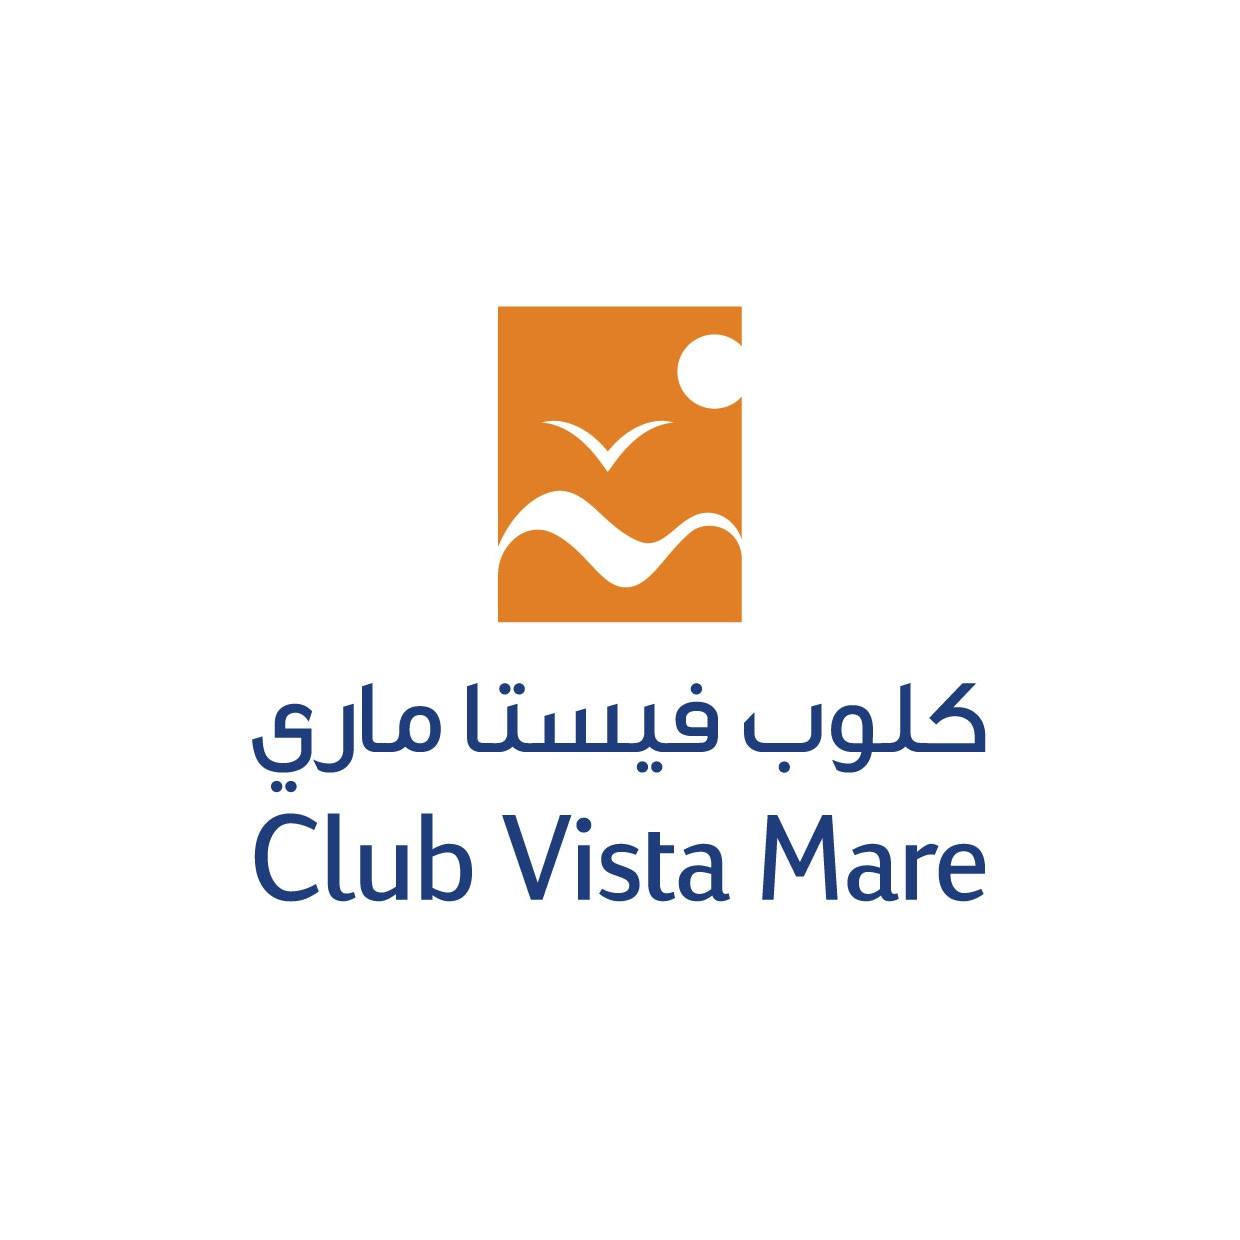 Club Vista Mare in Palm Jumeirah